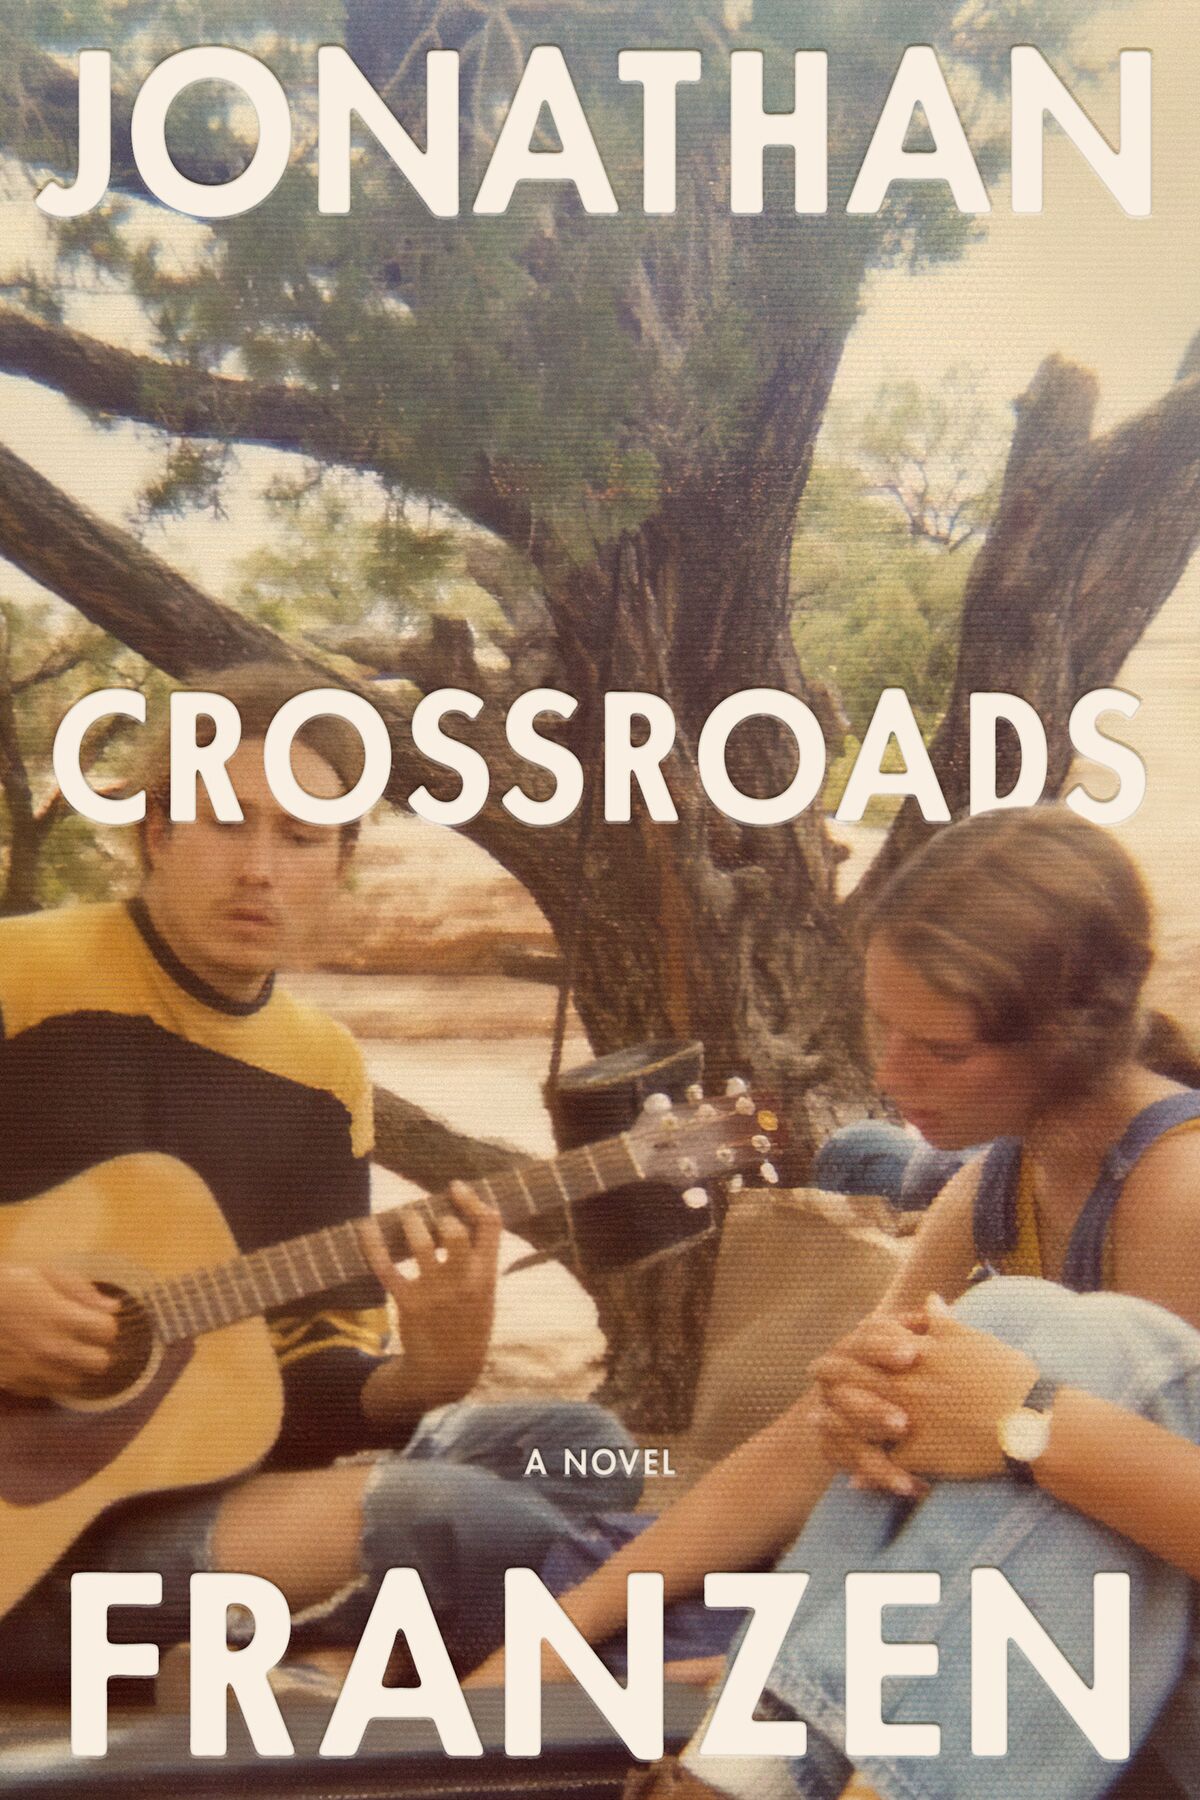 "Crossroads," by Jonathan Franzen